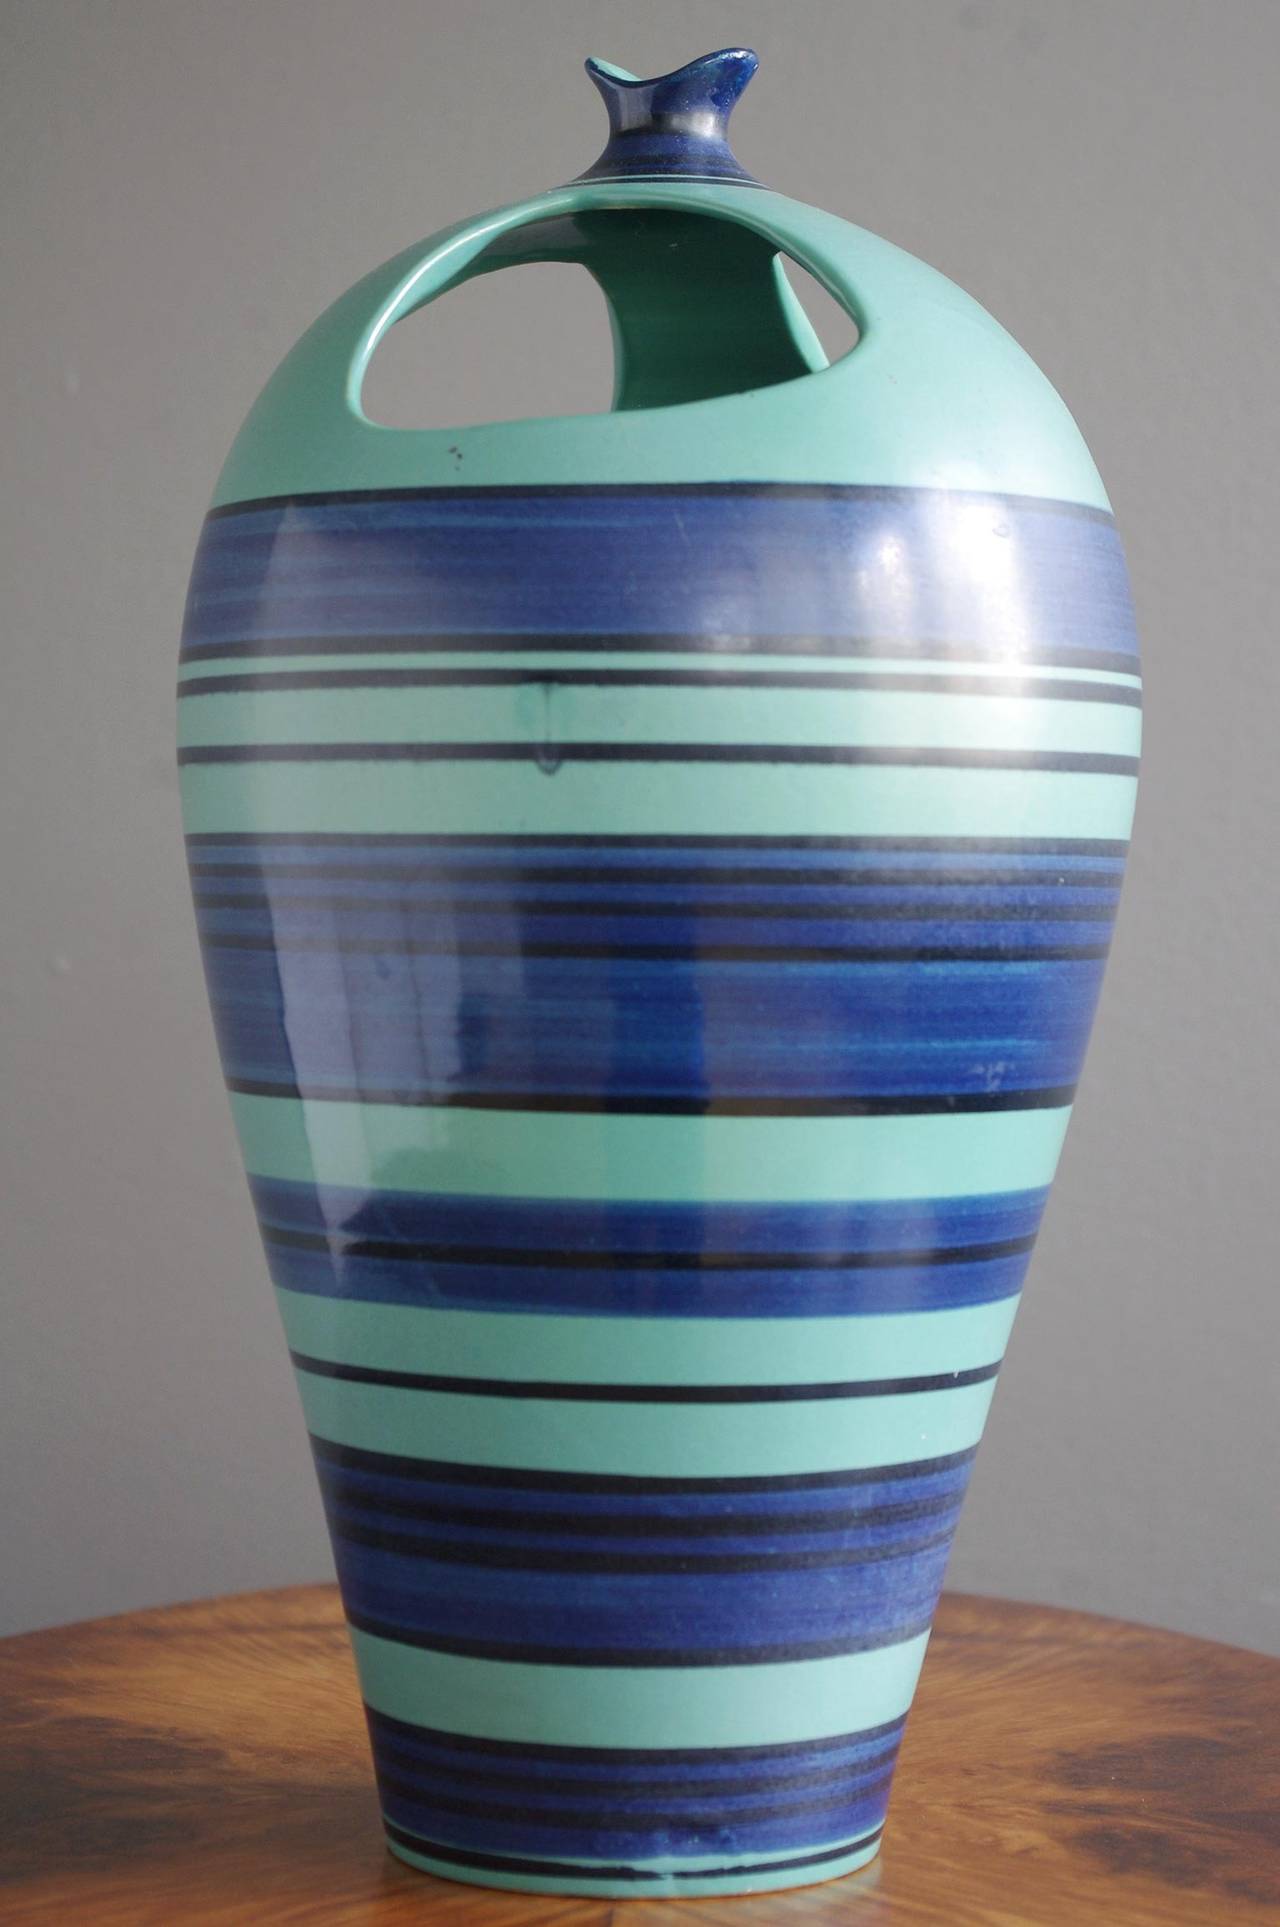 A glazed ceramic 